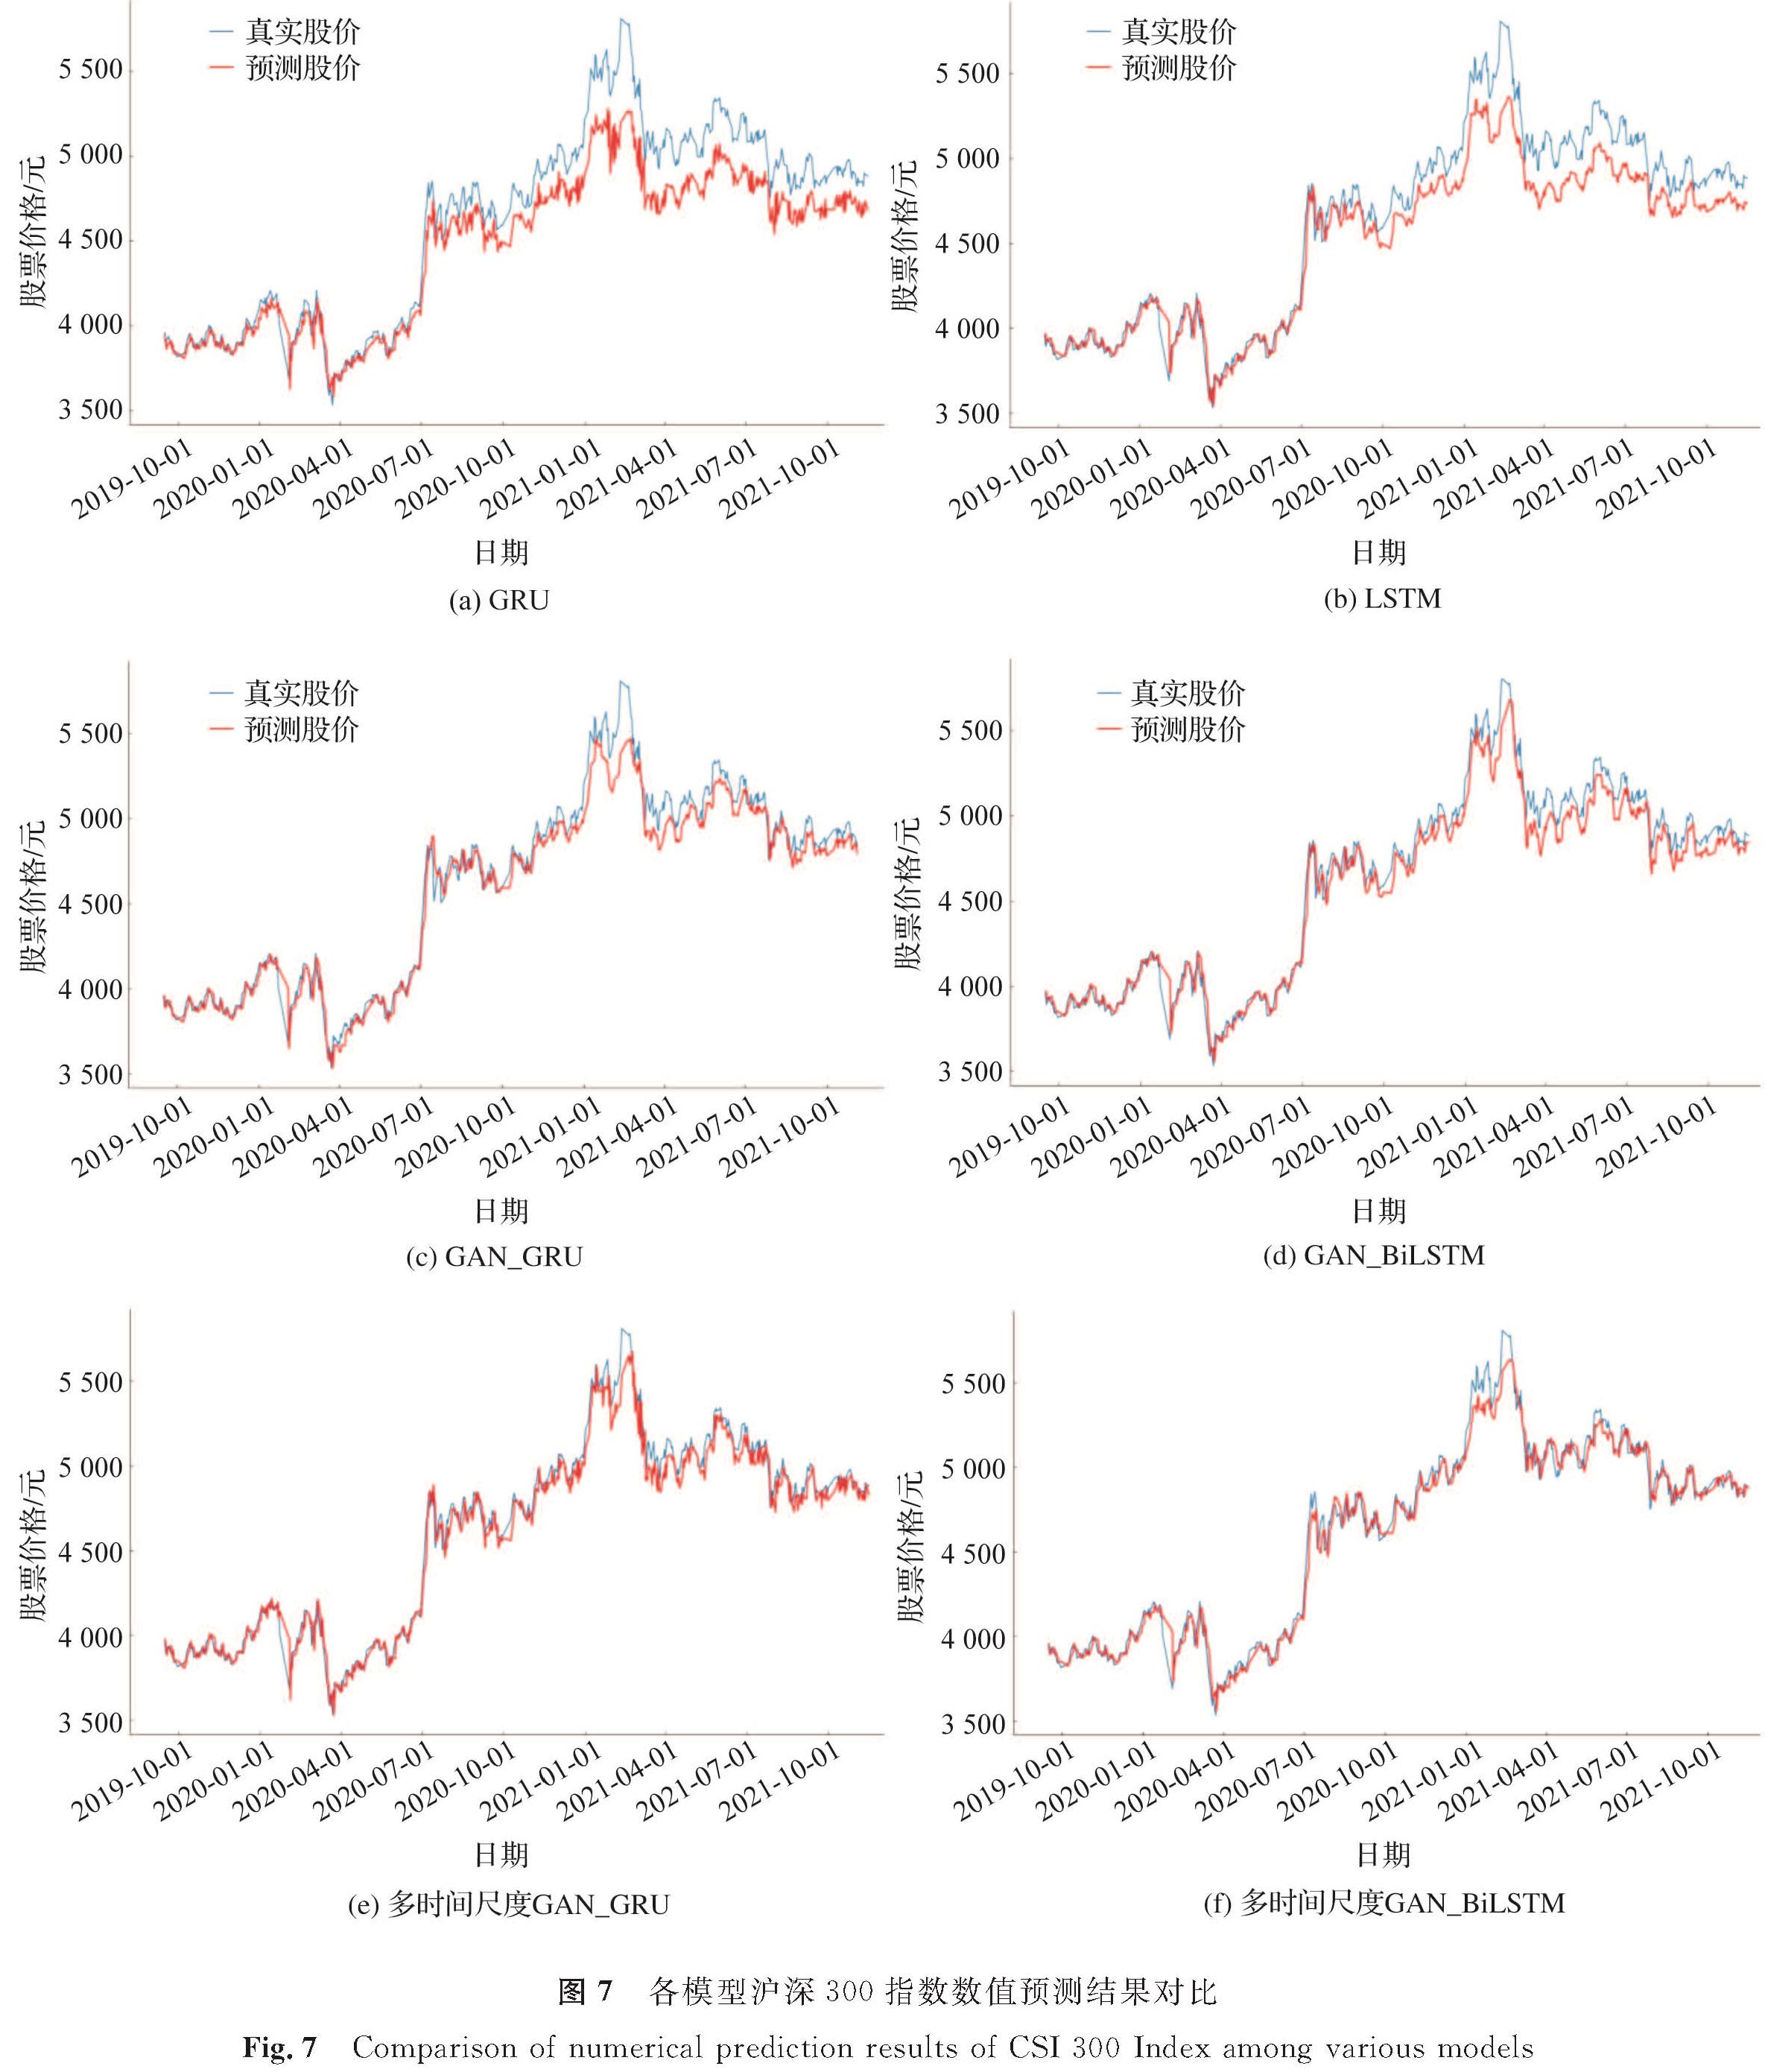 图7 各模型沪深300指数数值预测结果对比<br/>Fig.7 Comparison of numerical prediction results of CSI 300 Index among various models